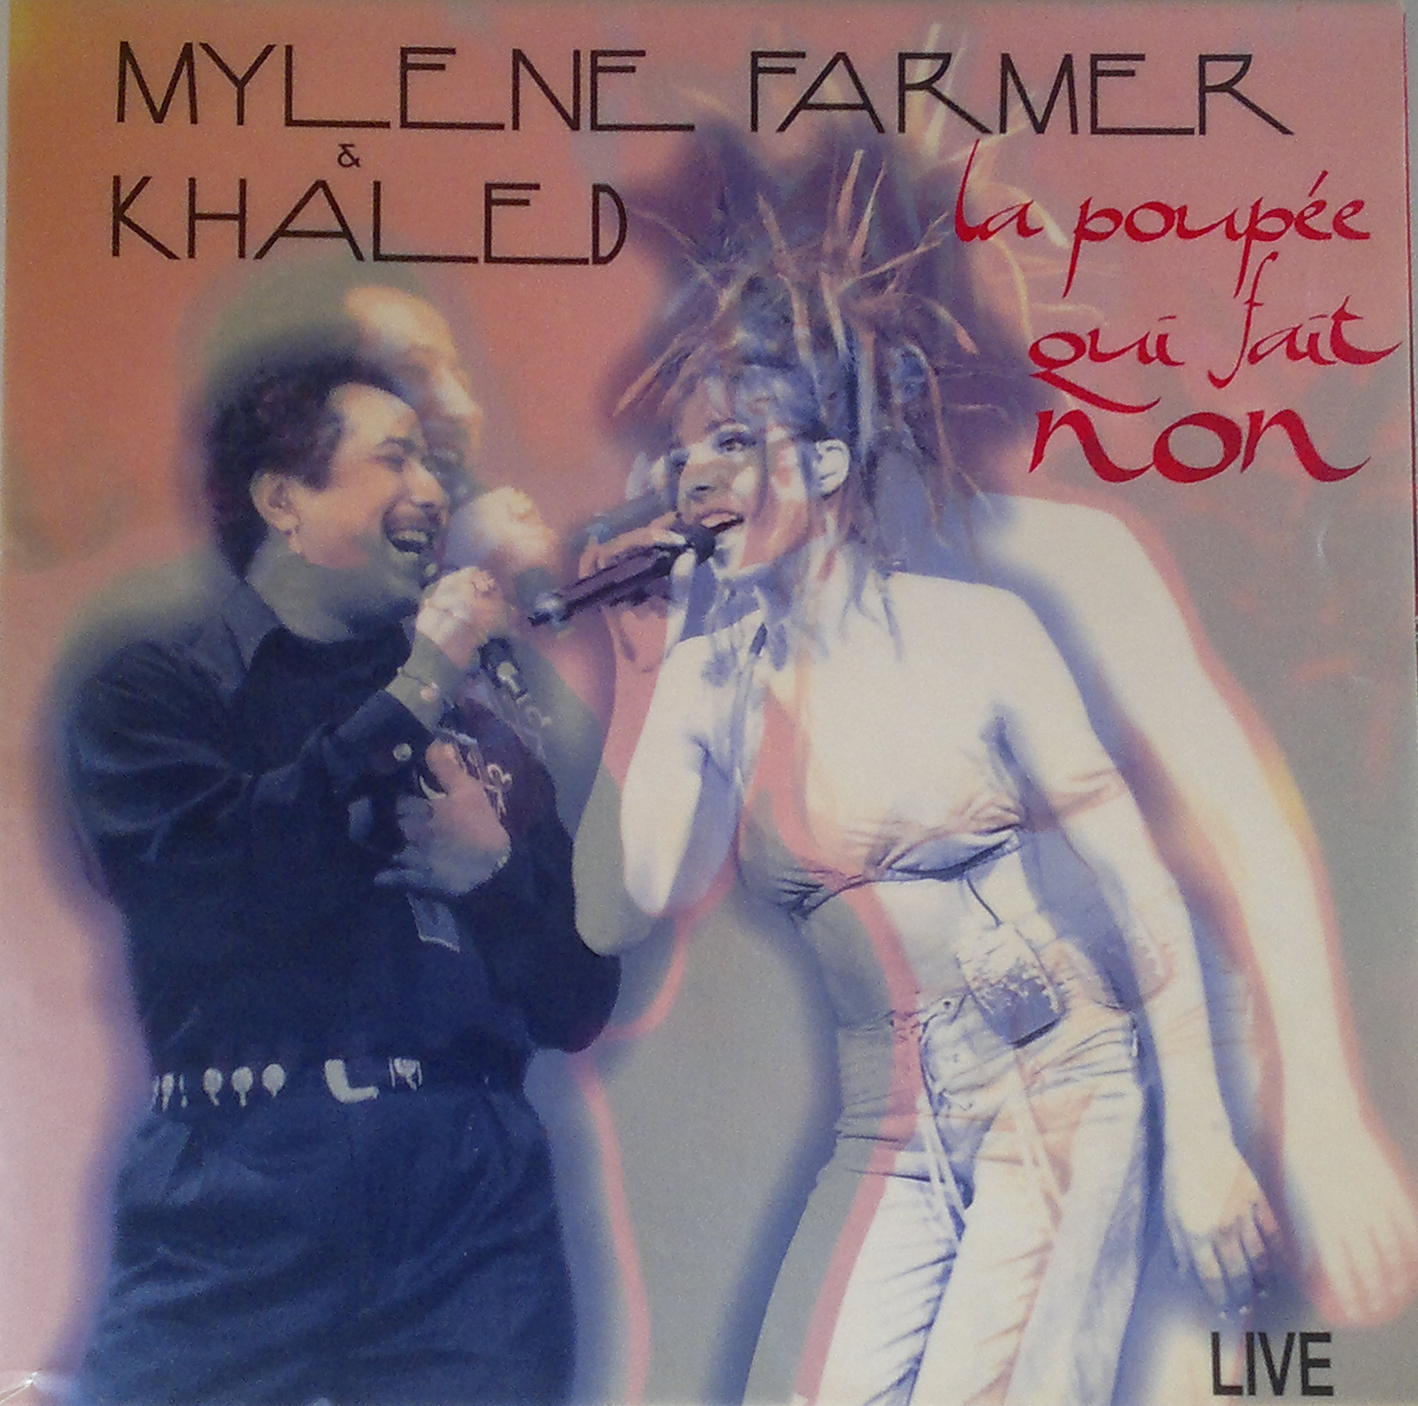 La Poupée qui fait non (live) (avec Khaled) - CD Promo Luxe France